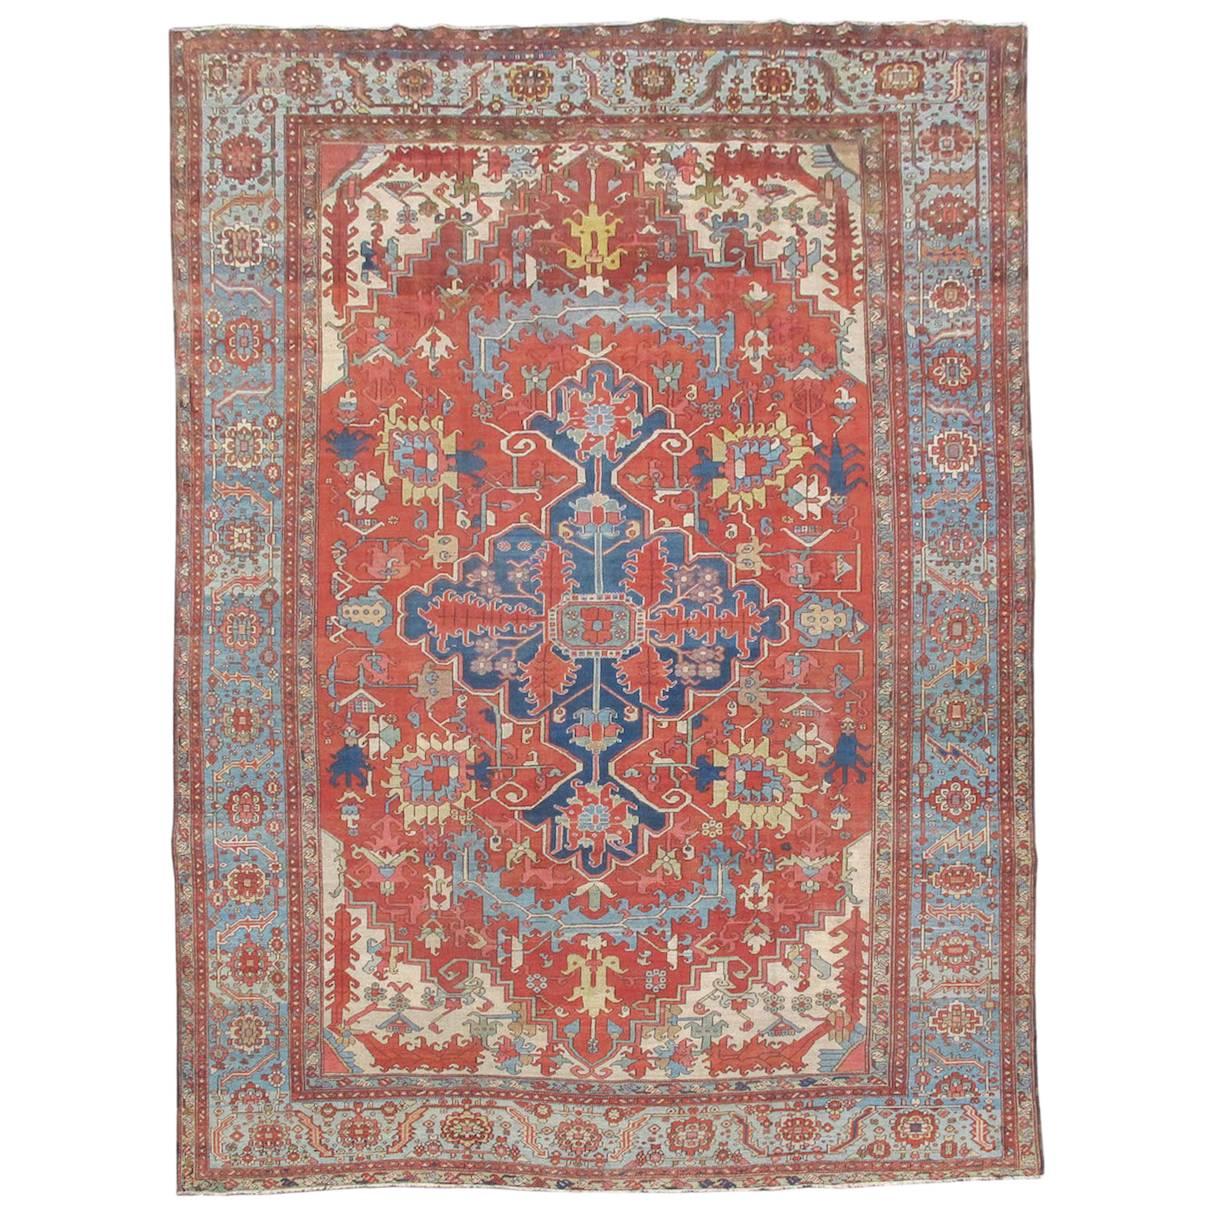 Late 19th Century Red and Blue Indigo Serapi Carpet